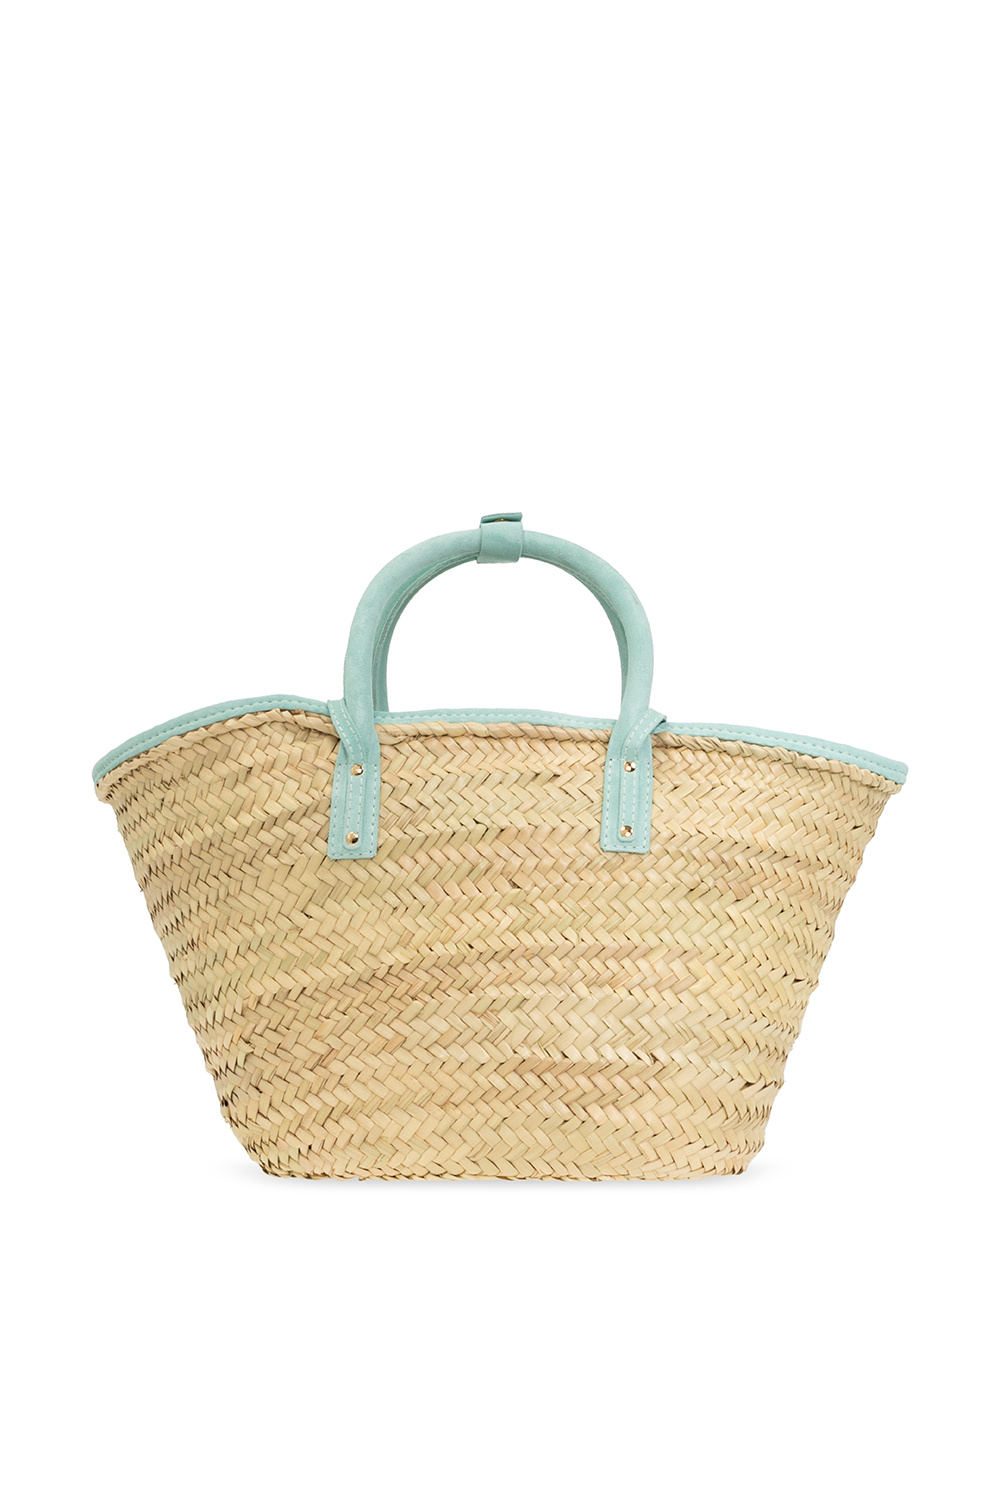 Jacquemus ‘Le Soleil’ shopper bag